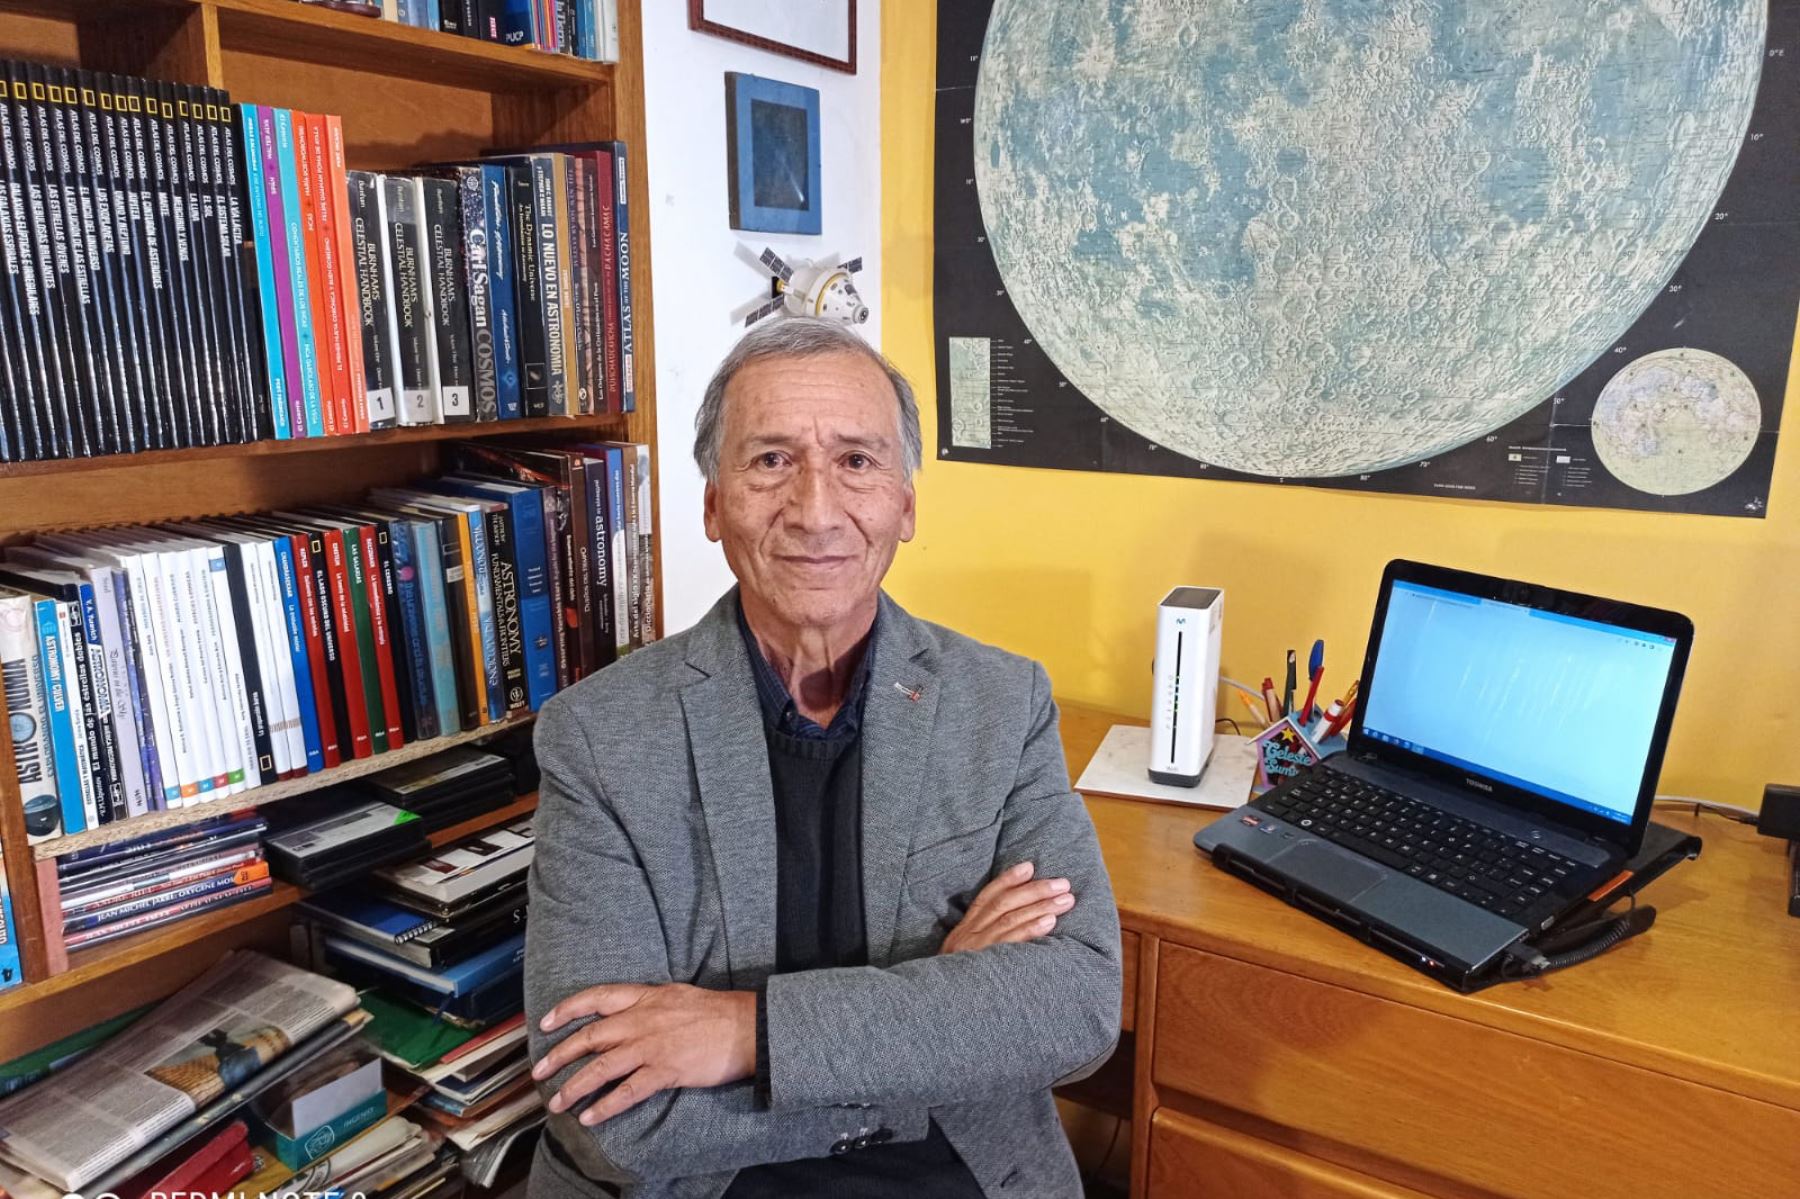 El astrónomo cusqueño, Erwin Salazar Garcés, es autodidacta y un apasionado de la astronomía inca.